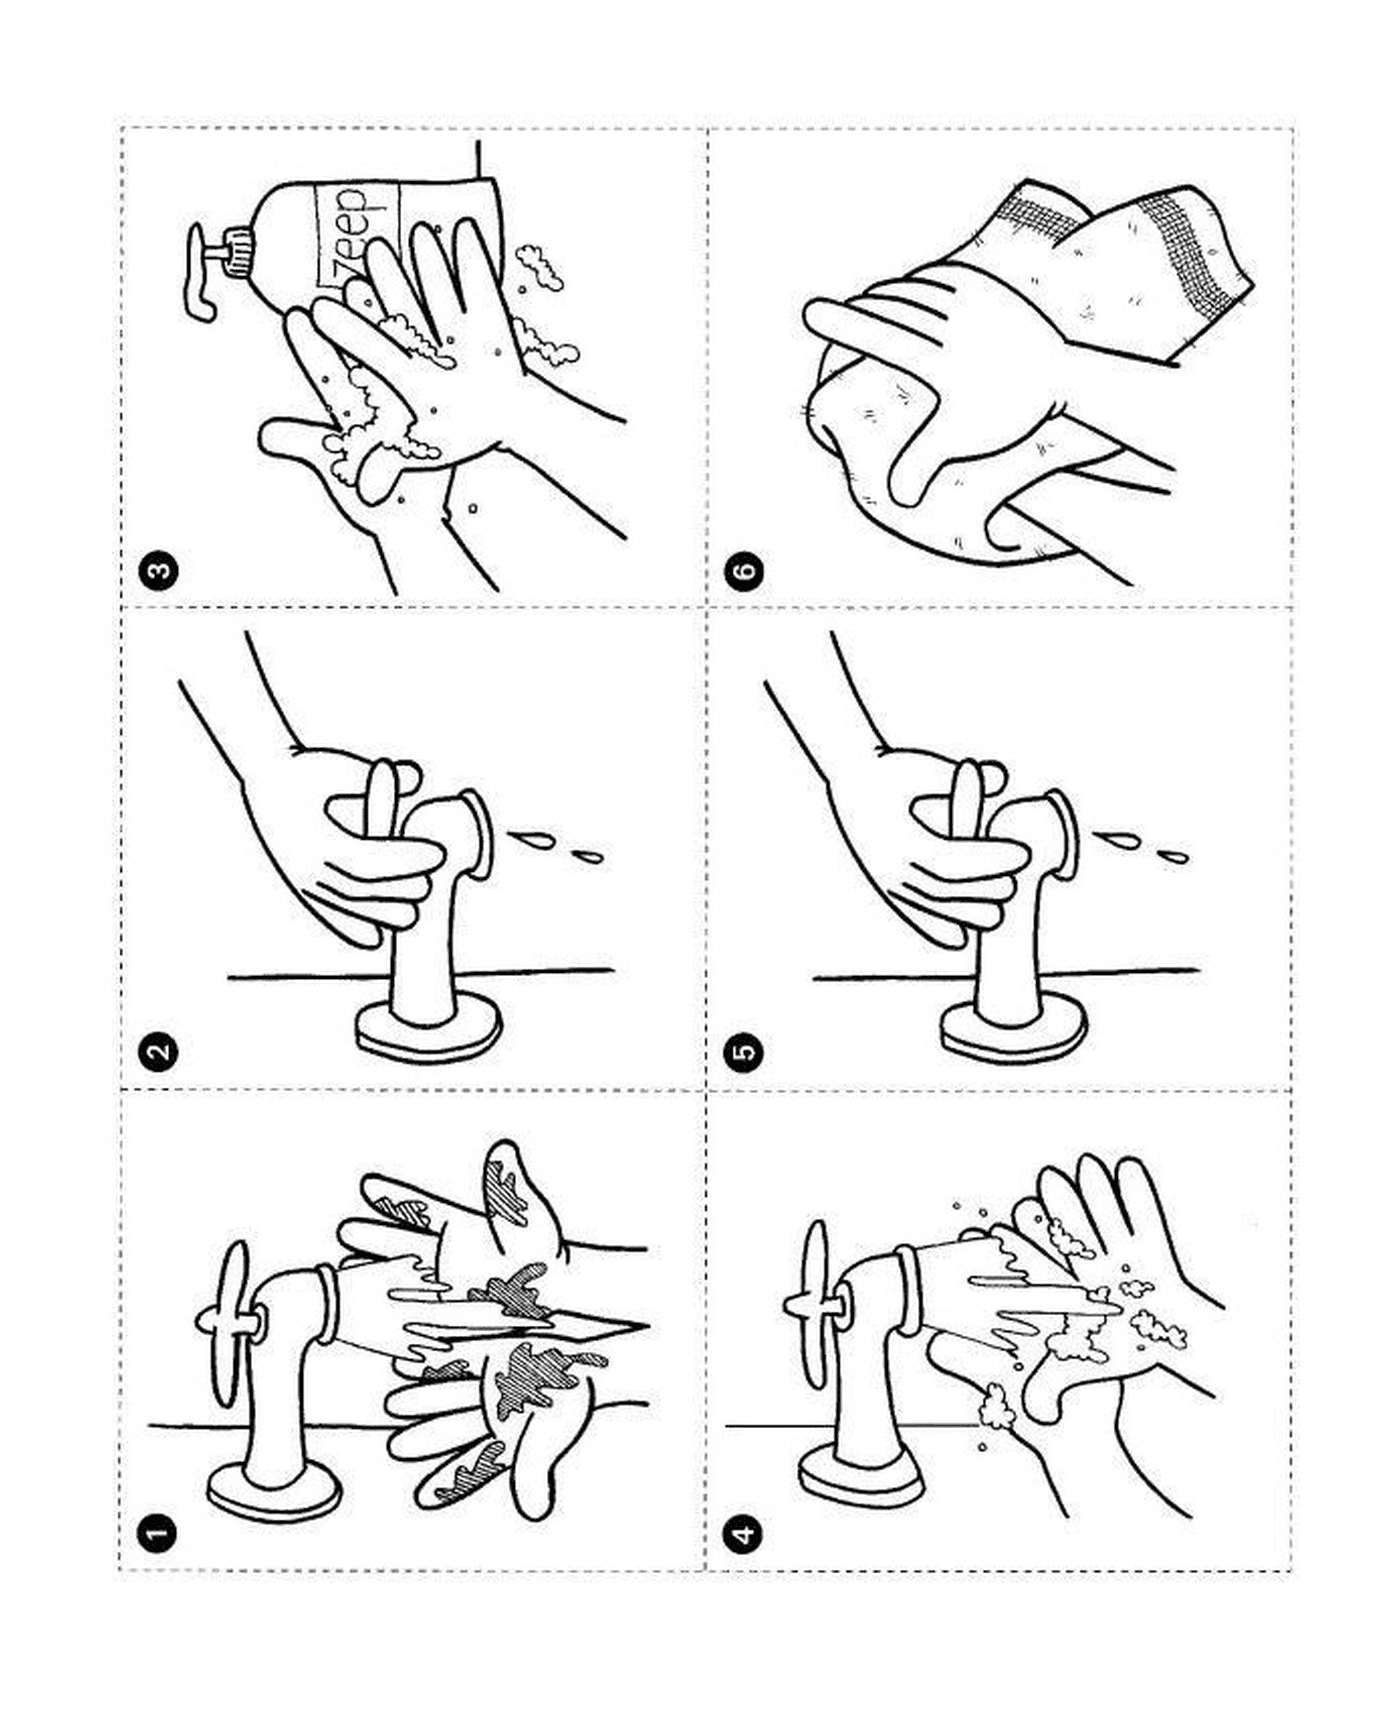   Des instructions sur comment se laver les mains avec du savon 